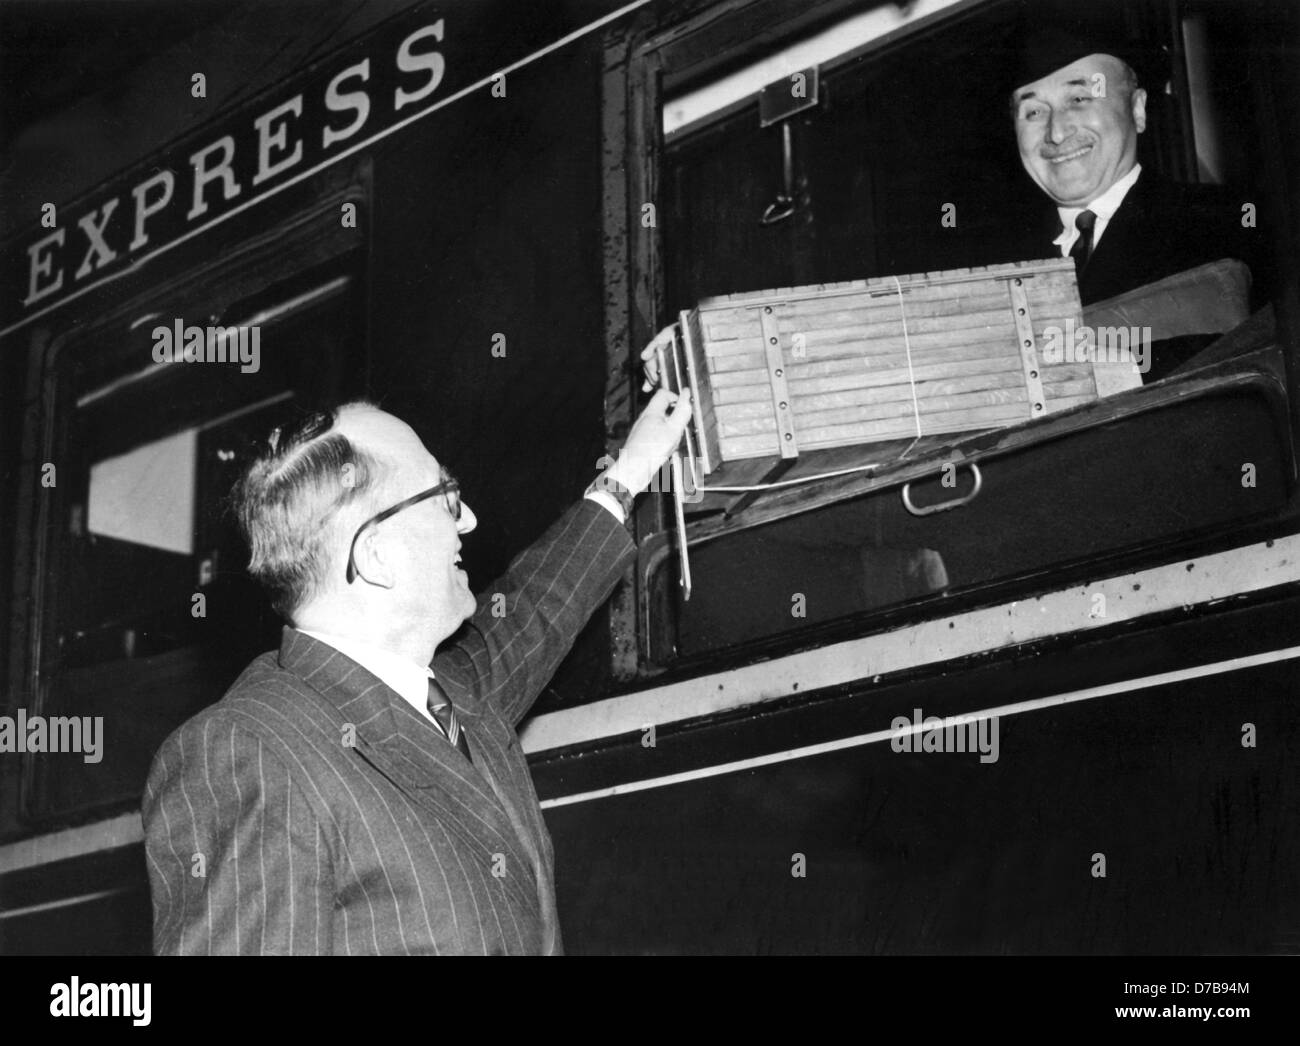 Chef de la planification économique français Jean Monnet (r) reçoit une  boîte d'encre de l'imprimante du secrétaire d'Etat, Walter Hallstein (l) le  7 avril en 1951, la contribution de l'Allemagne à l'impression